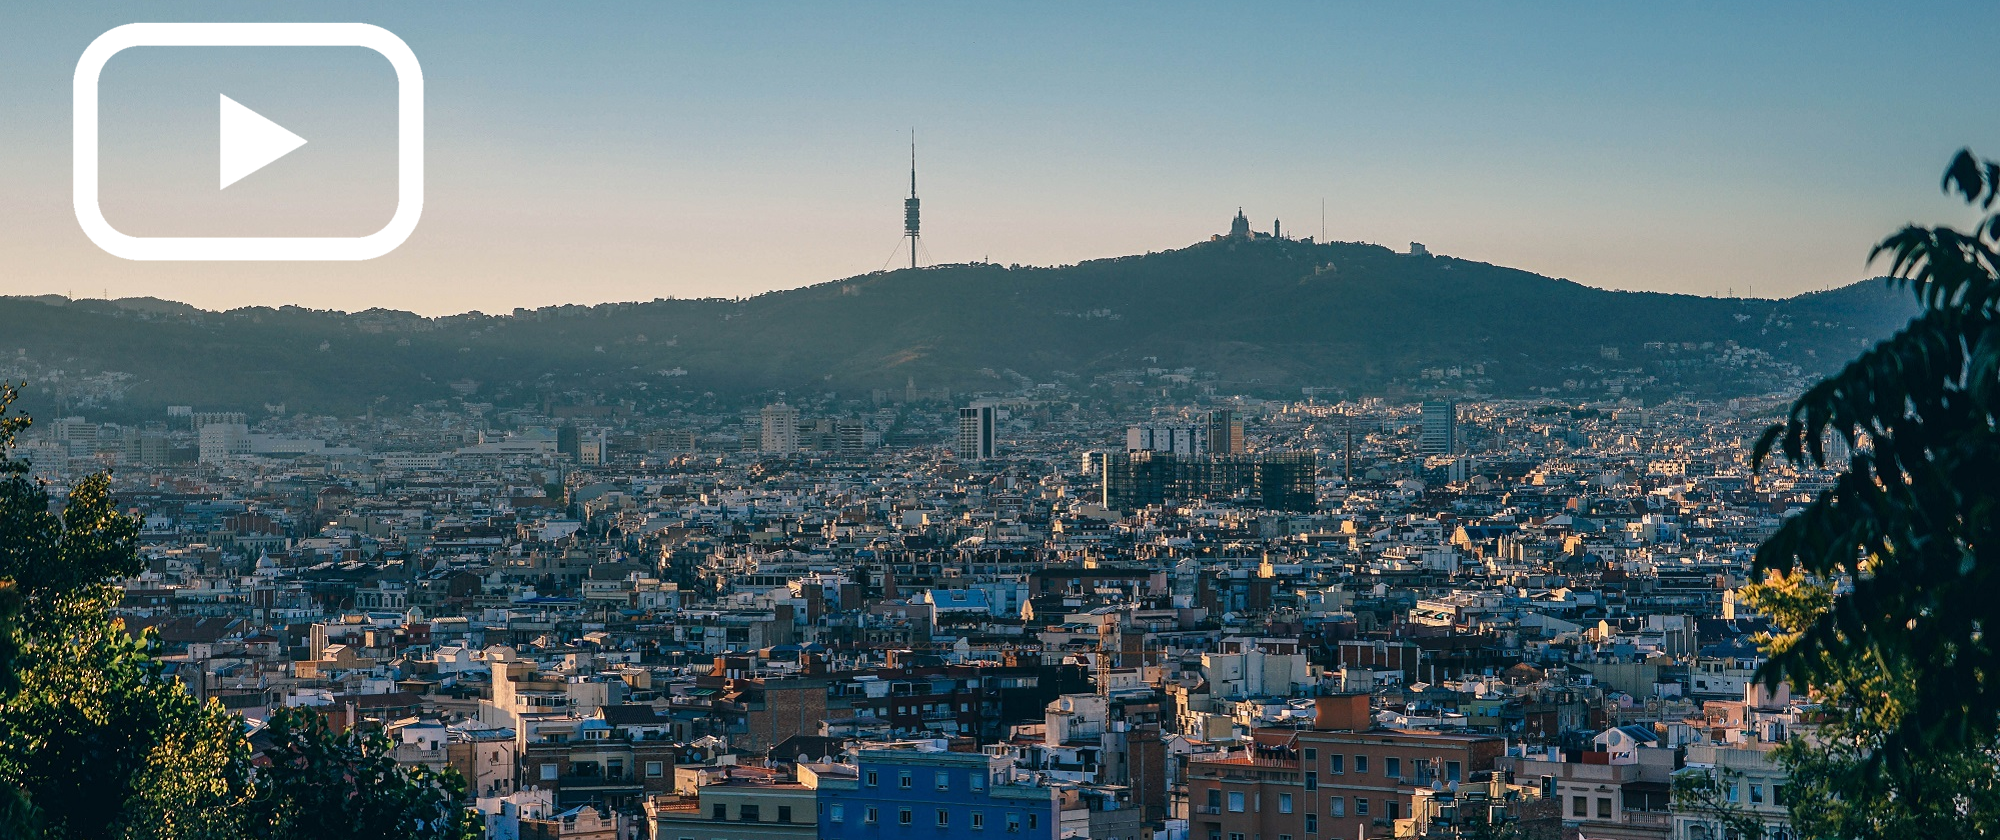 Torre de telecomunicacions Collserola a Barcelona (Imatge de Pexels)